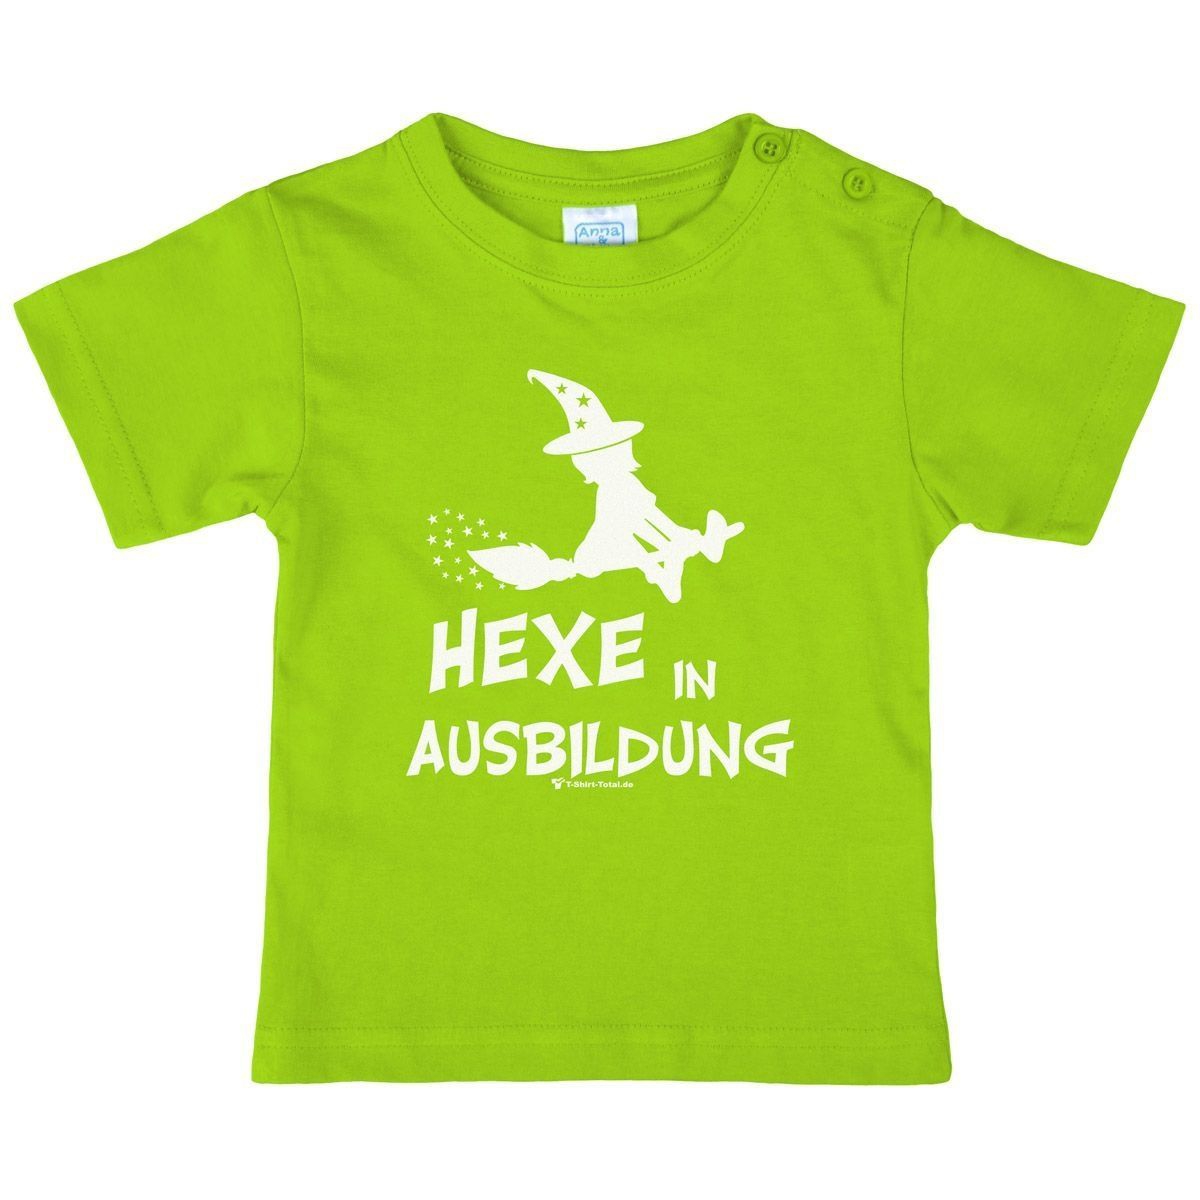 Hexe in Ausbildung Kinder T-Shirt hellgrün 80 / 86